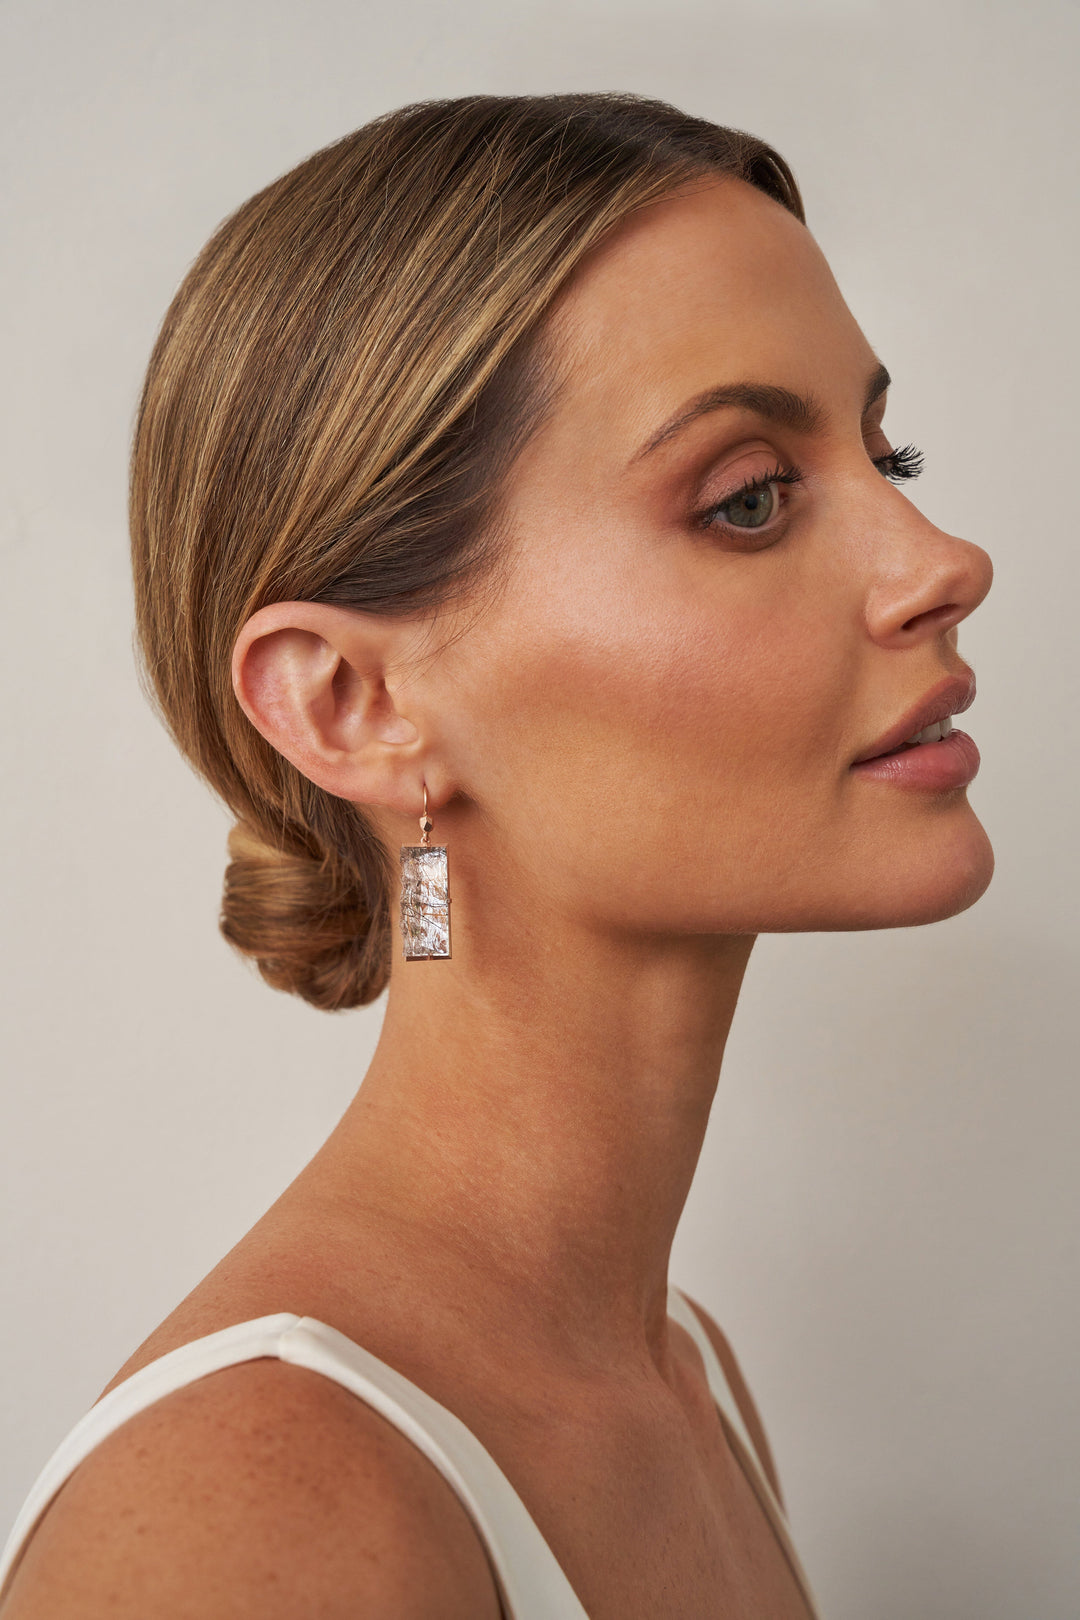 ‘Crevasse’ Rose Gold Tourmaline in Quartz Earrings Earrings Jason Ree Design 